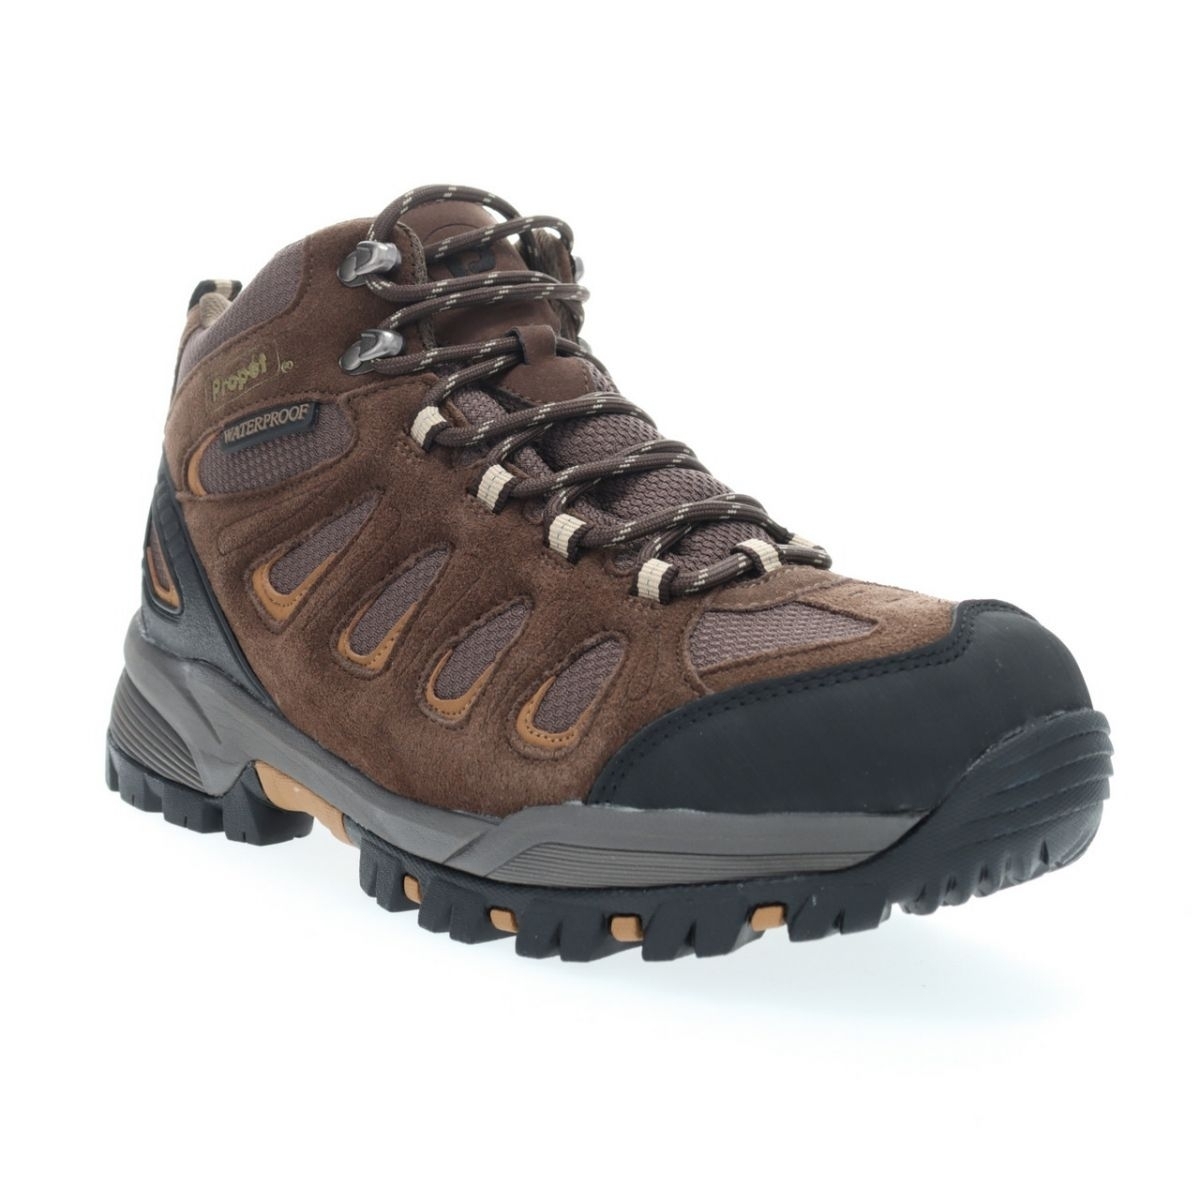 Propet Men's Ridge Walker Hiking Boot Brown - M3599BR 8 XX US Men BROWN - BROWN, 15 Wide